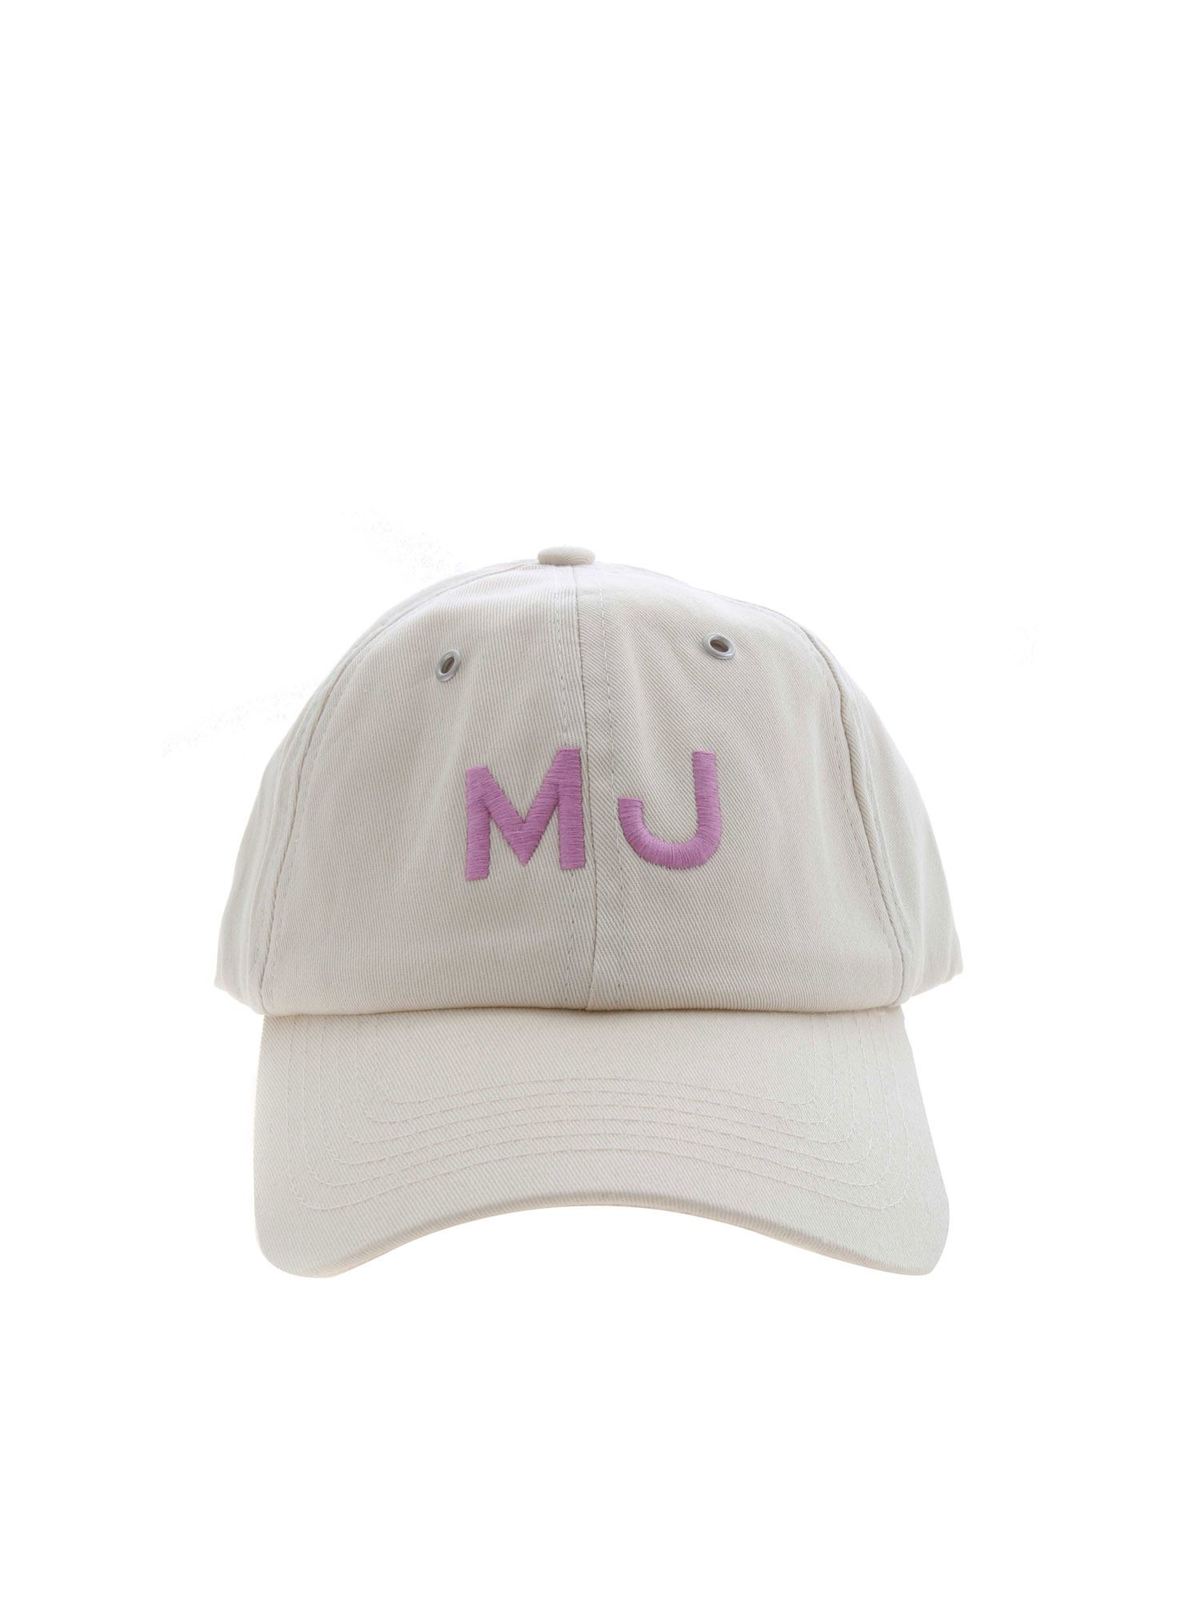 Hats & caps Marc Jacobs - MJ cap in beige - C901P17PF21177 | iKRIX.com